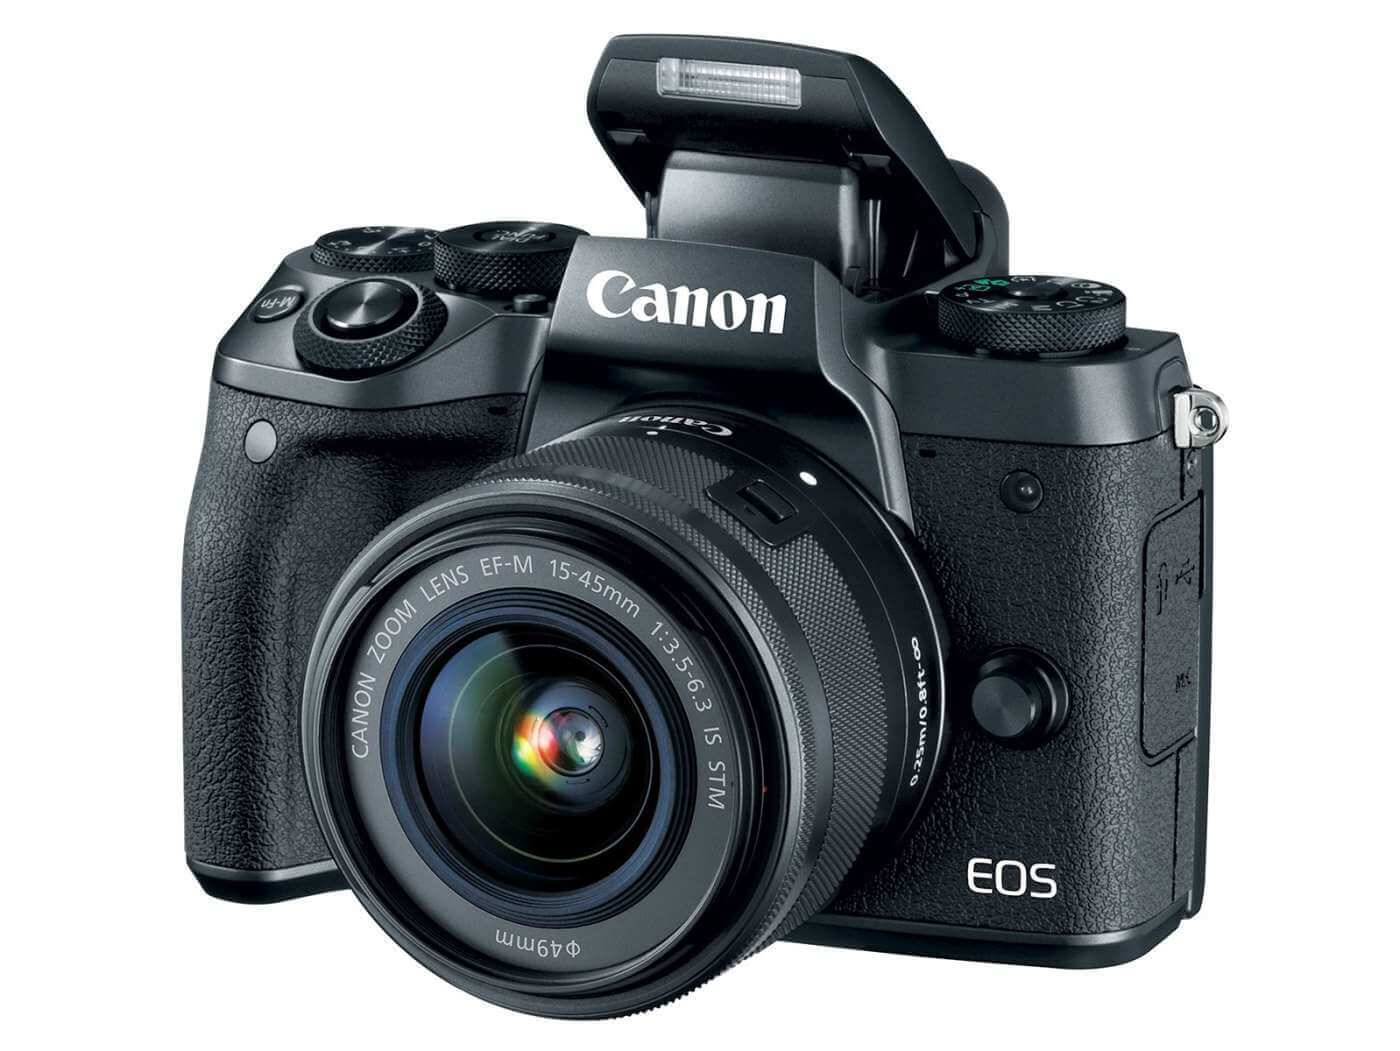 Canon представила флагманскую беззеркалку EOS M5 и объектив EF